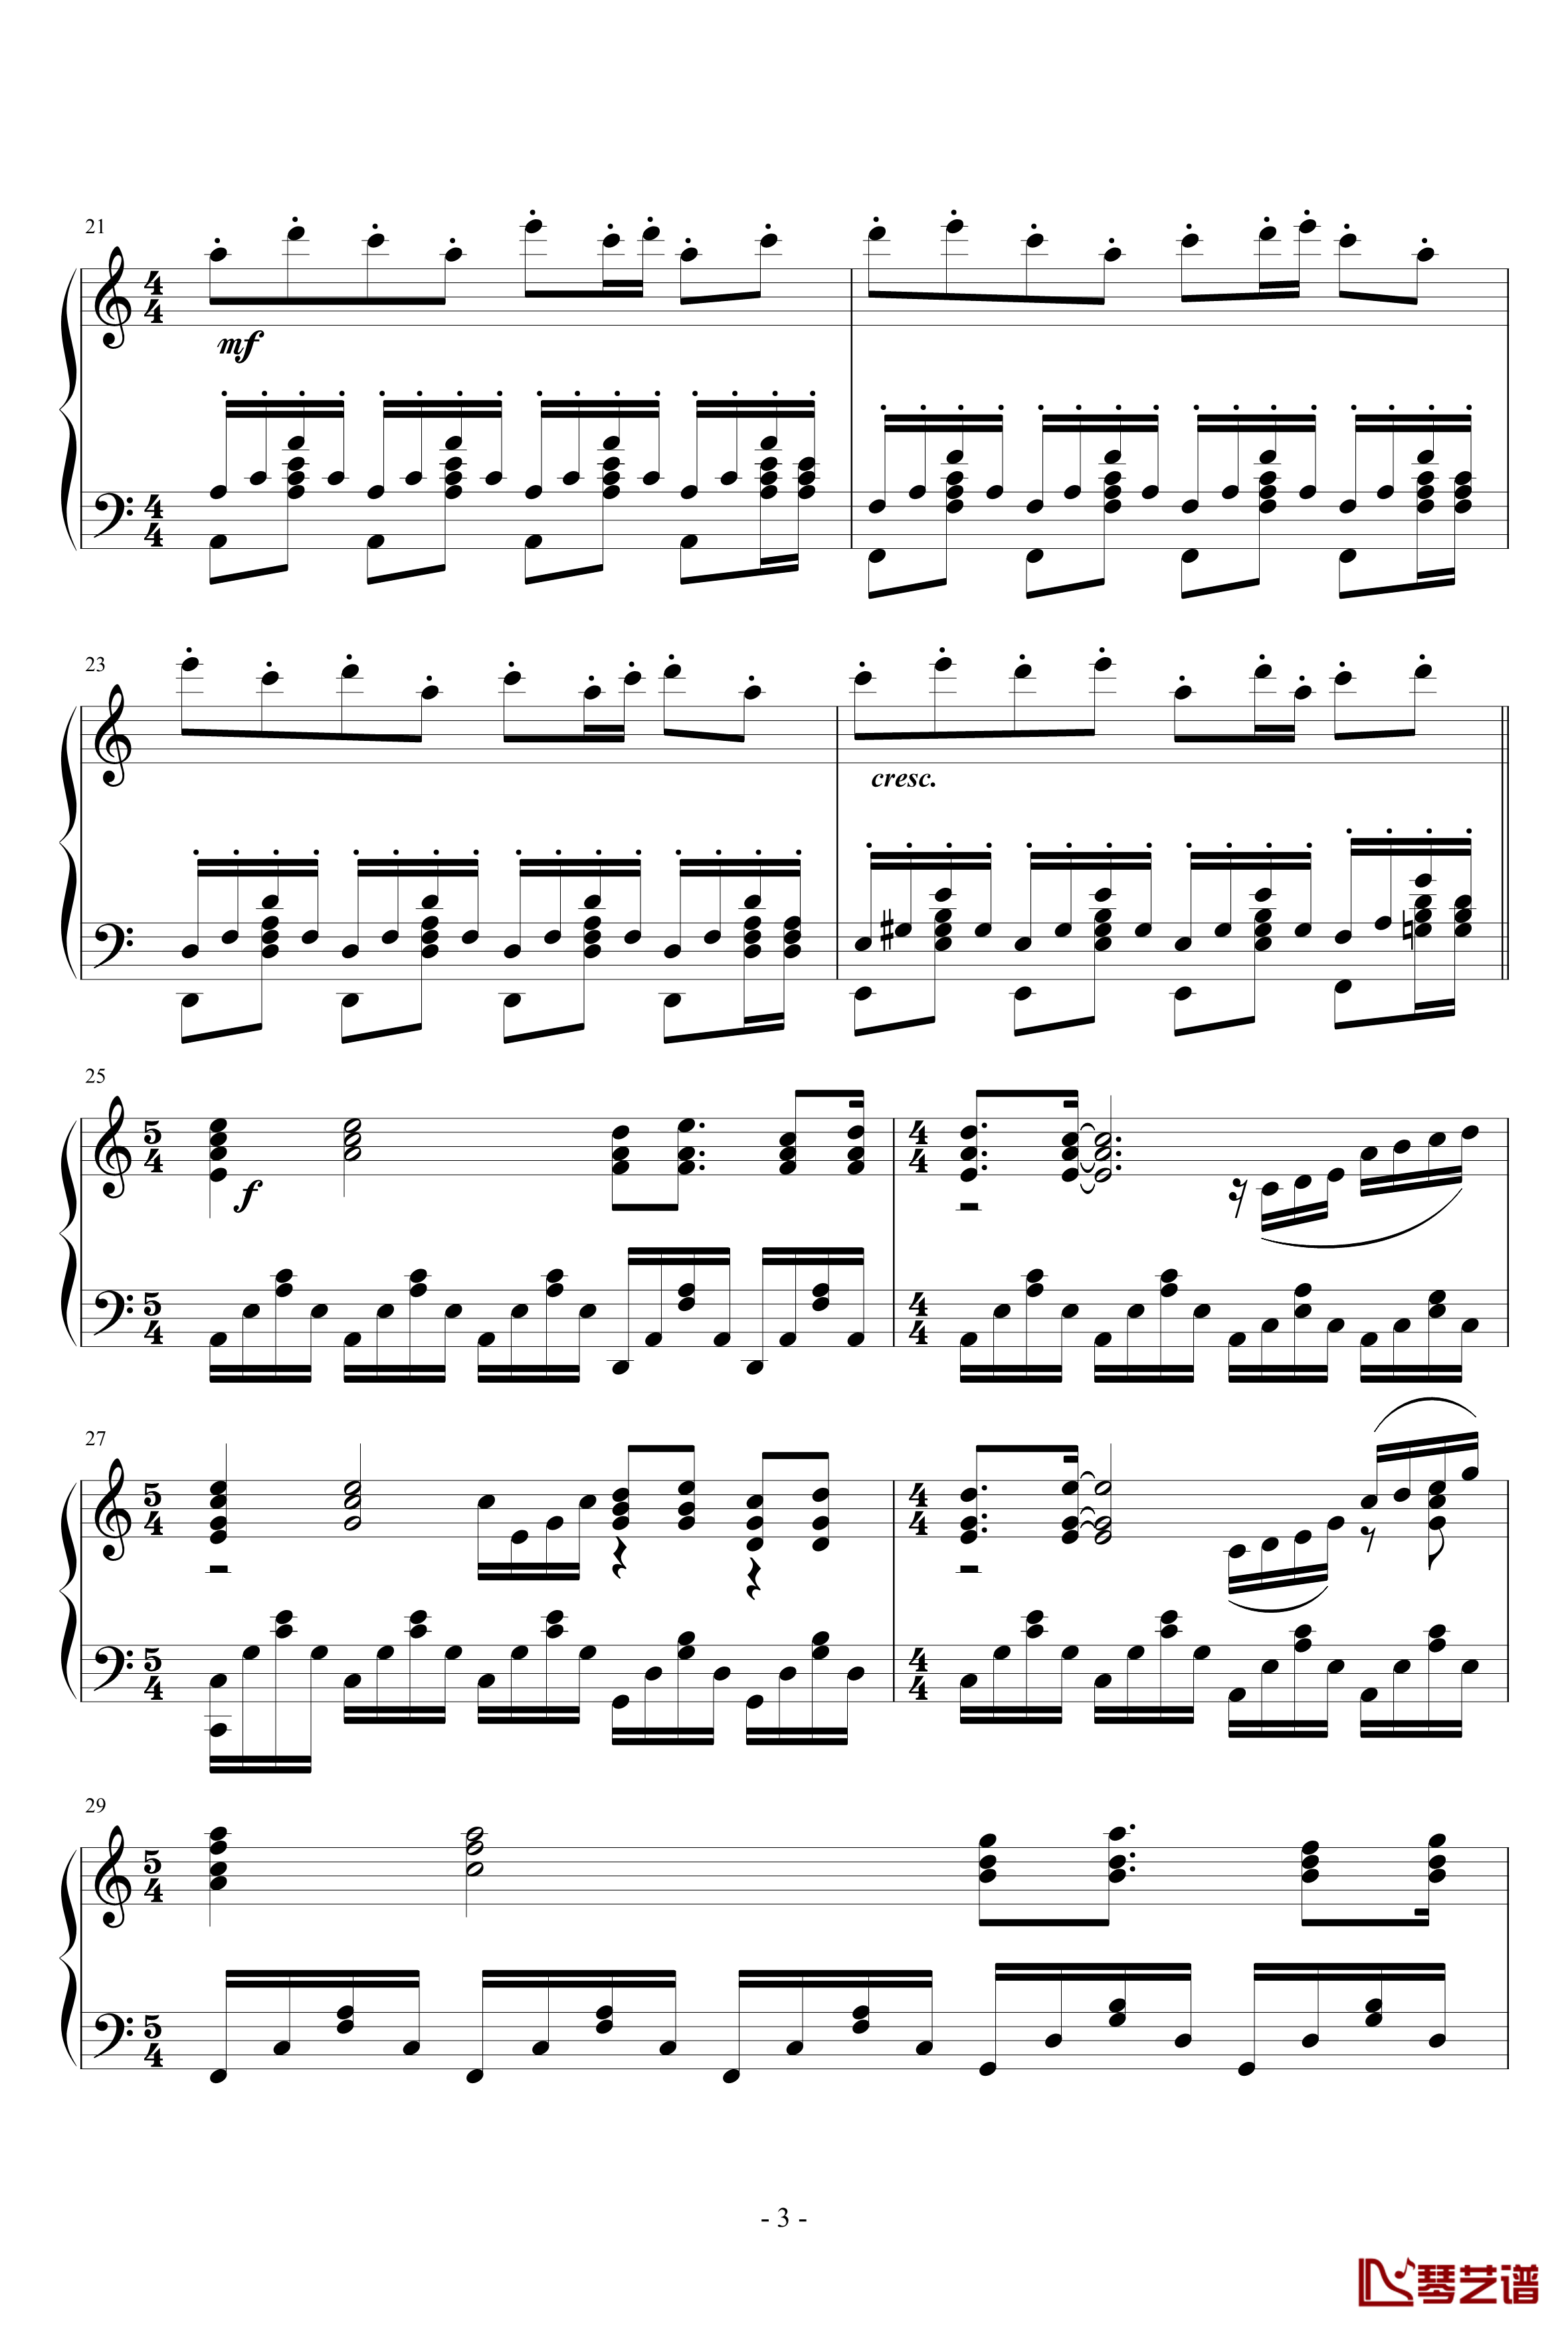 La Ballata Di Sacco E Vanzetti钢琴谱-死刑台的旋律主题曲-Ennio Morricone3